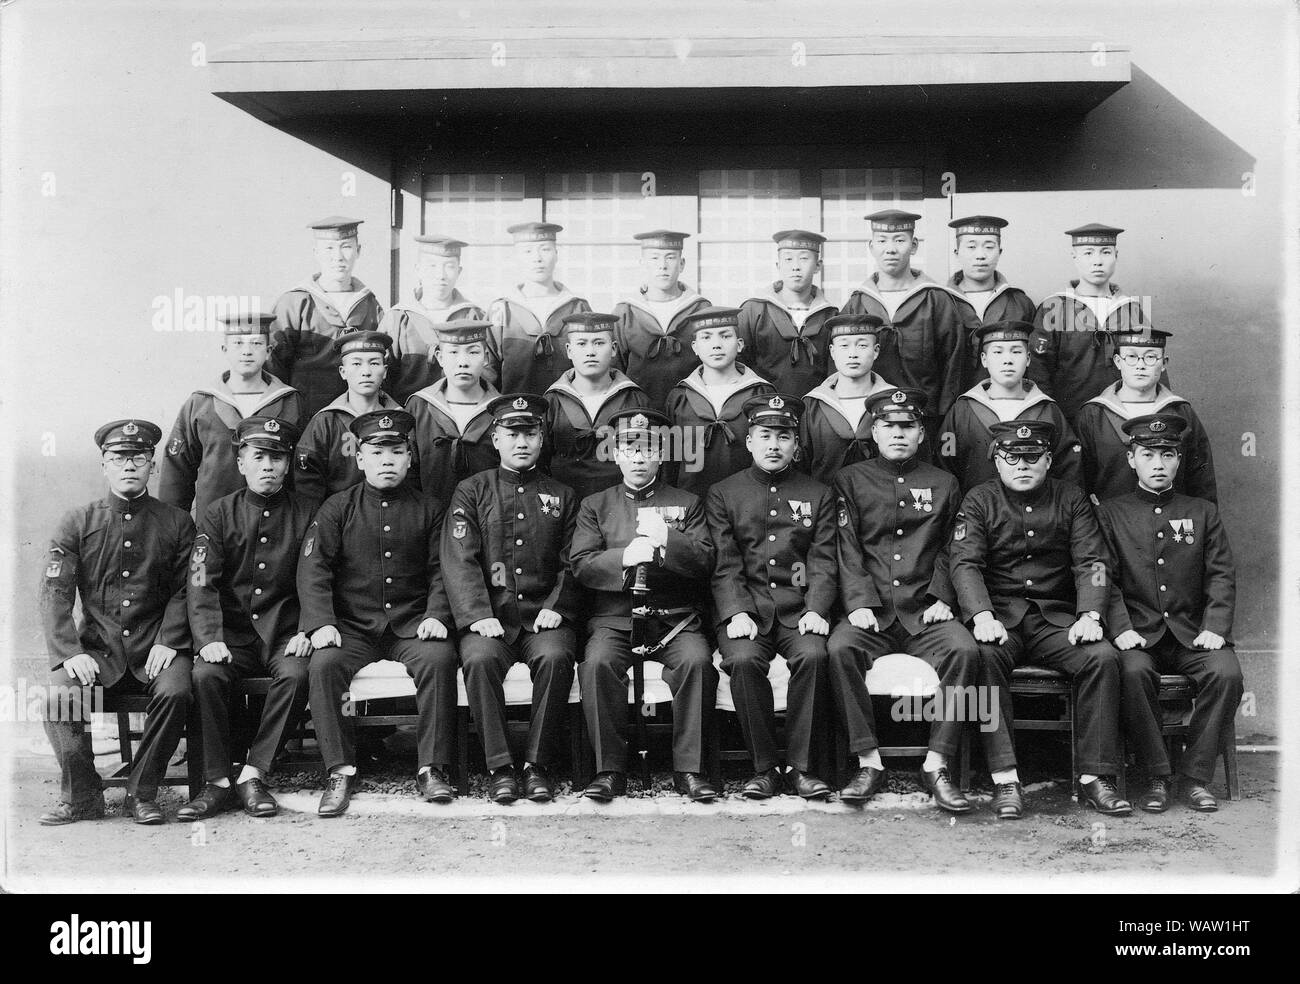 [ 1920s Giappone - Cadetti della Marina giapponese ] — cadetti in uniforme e ufficiali della Marina imperiale giapponese a Yokosuka, Kanagawa. Sulla base delle insegne, questo è stato fotografato nel novembre 1942 al più presto. 20th ° secolo gelatina d'annata argento stampa. Foto Stock